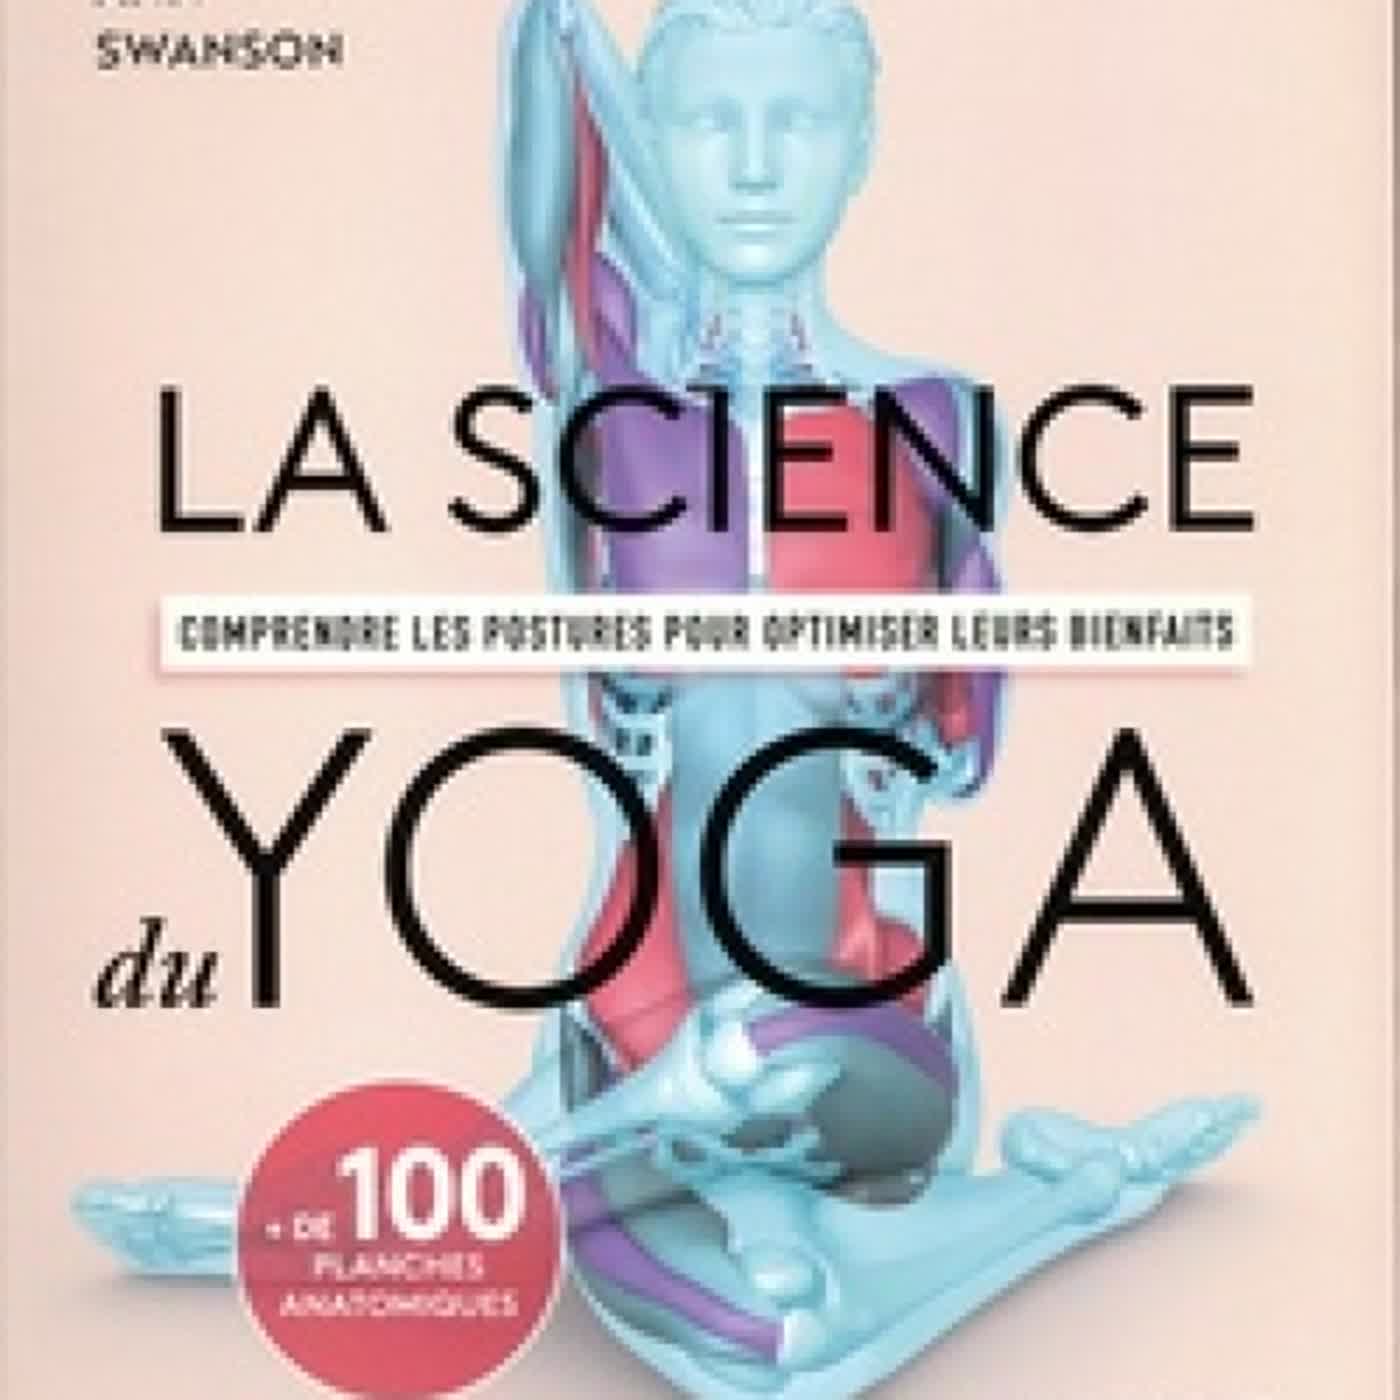 [Pdf/ePub] La science du yoga  - Comprendre les postures pour optimiser leurs bienfaits by Ann Swanson download ebook